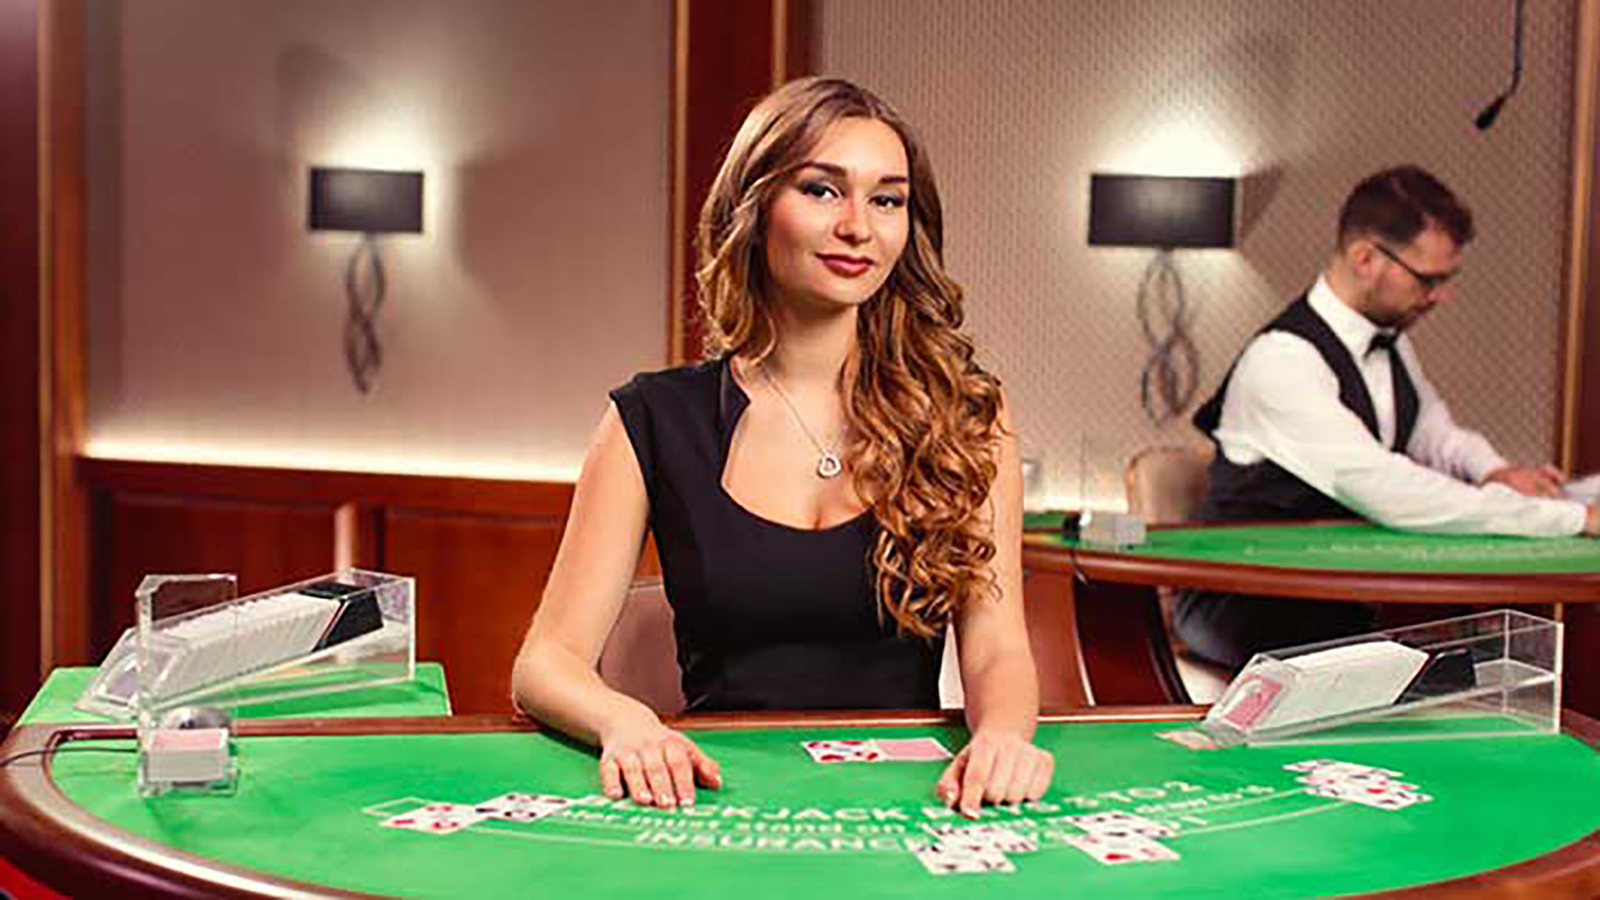 Blackjack live online casino ставки на спорт коэффициенты отзывы